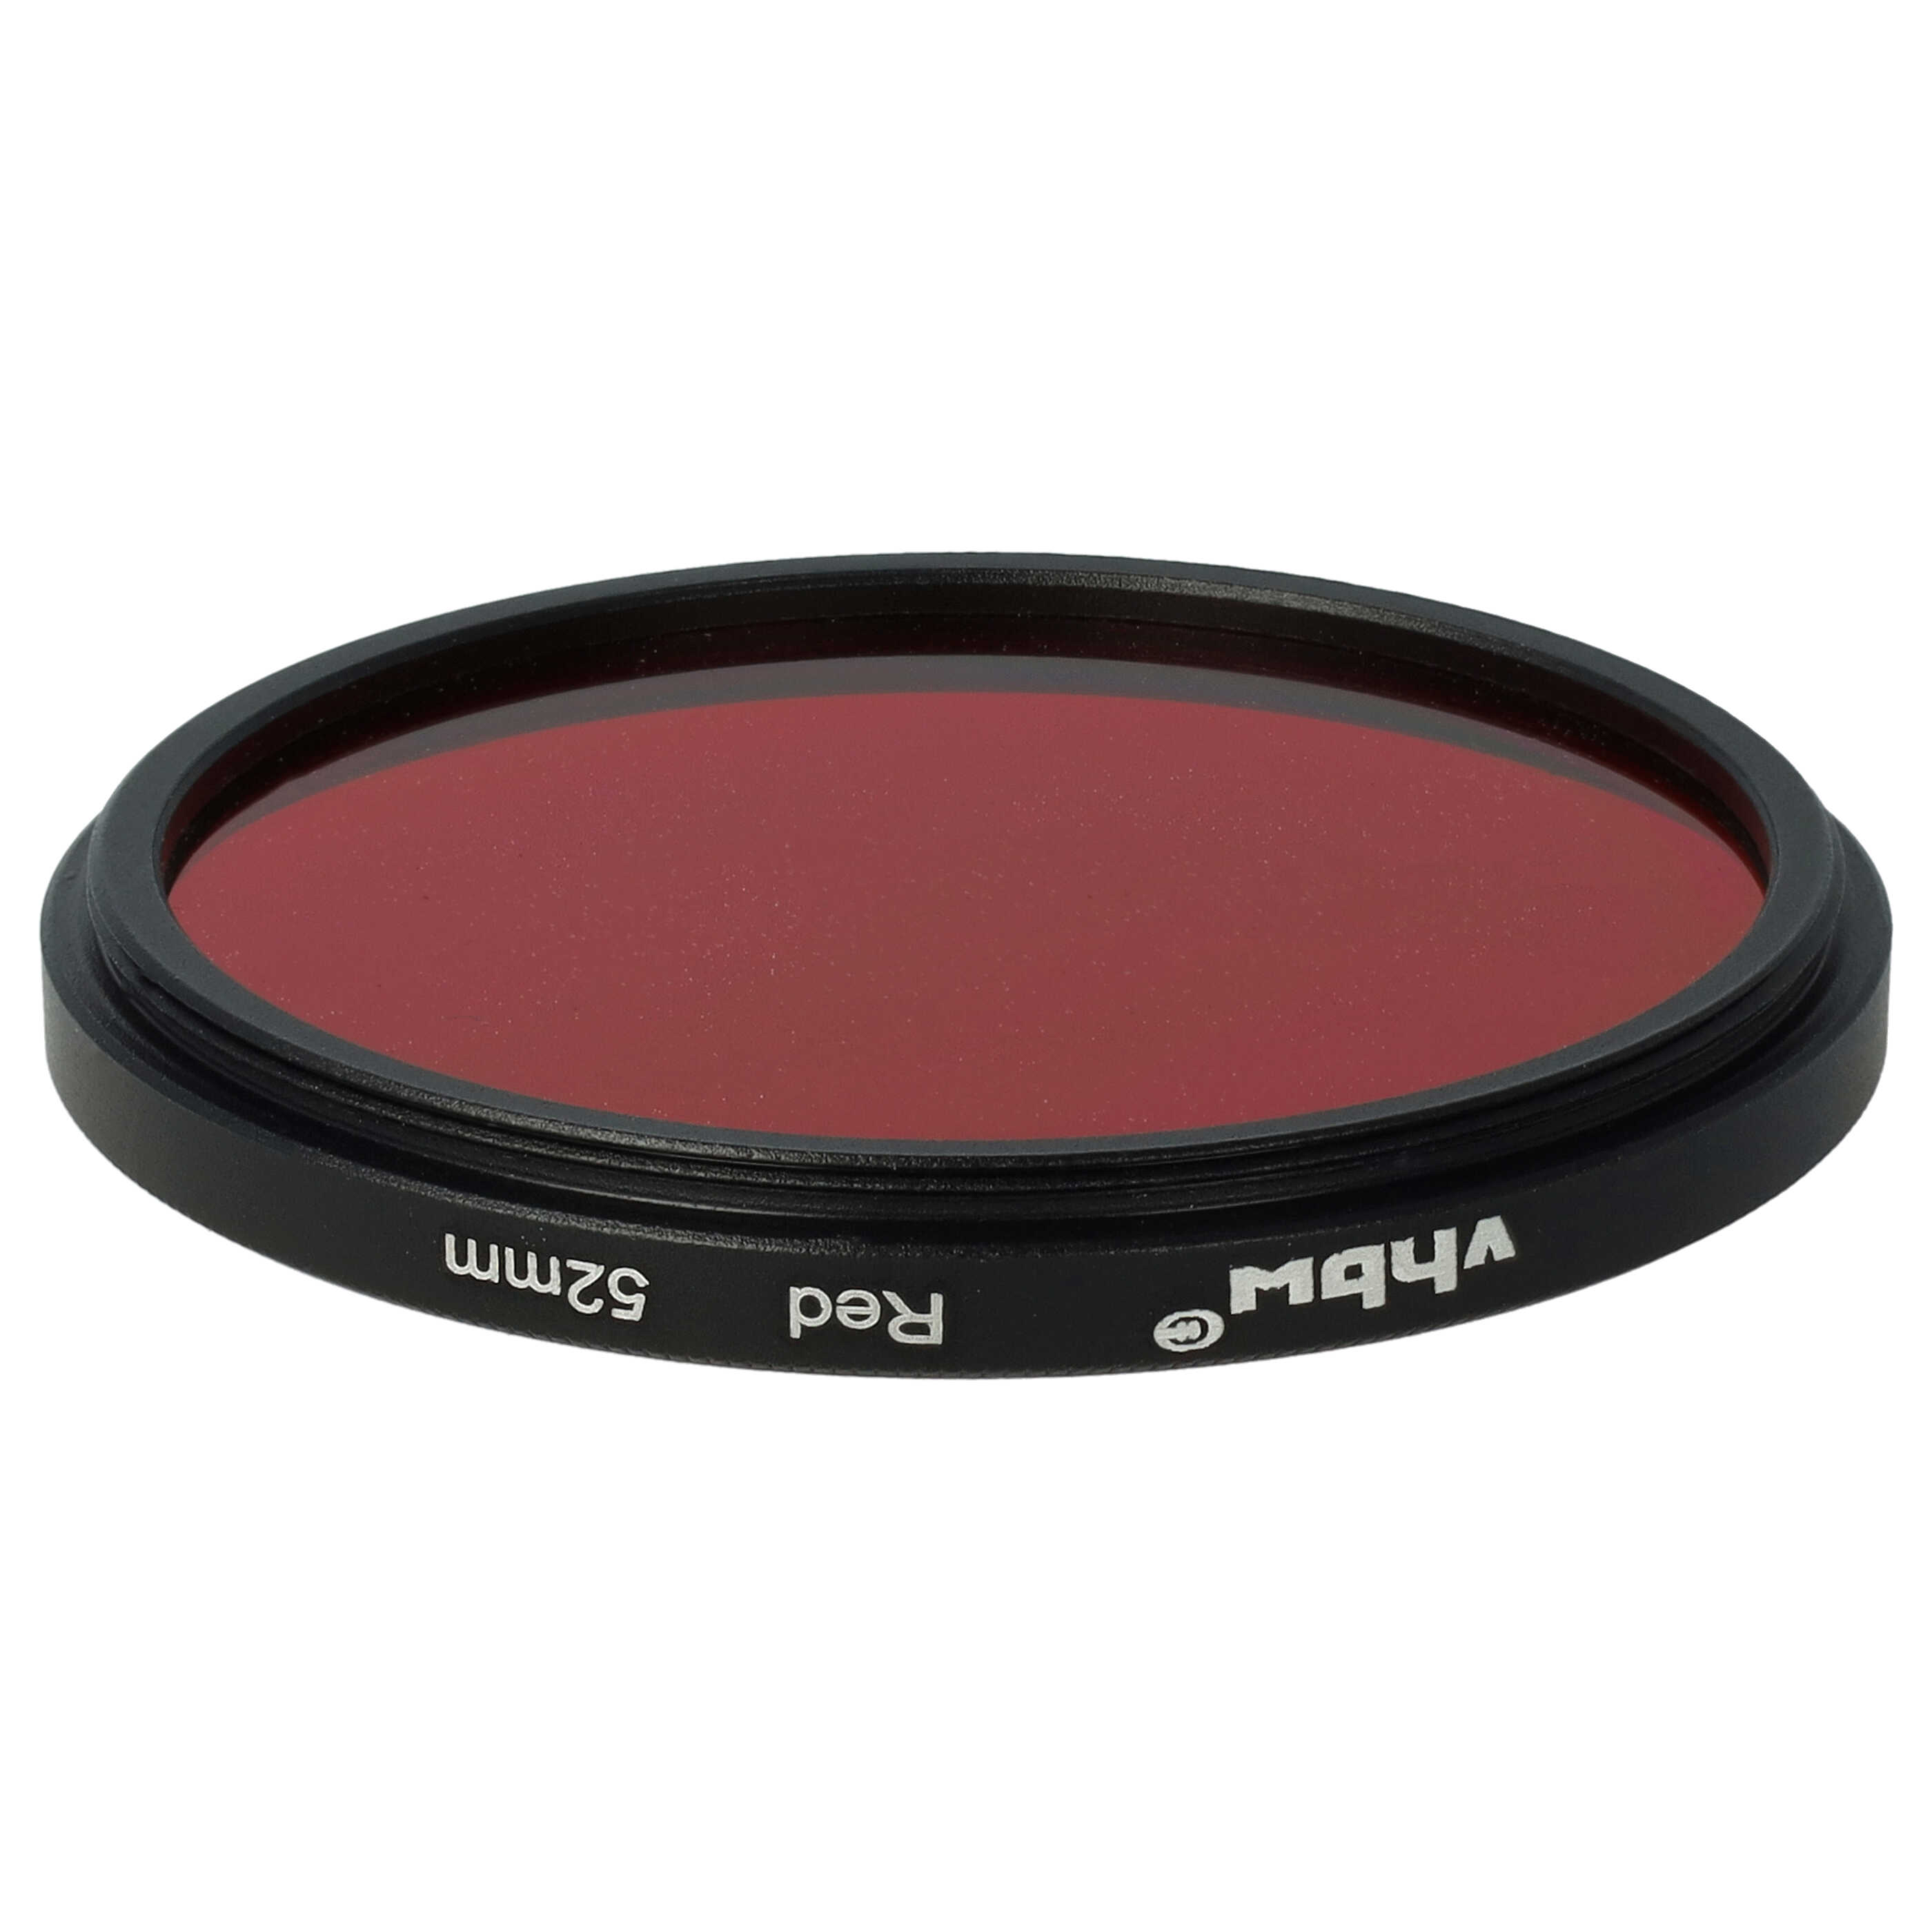 Farbfilter rot passend für Kamera Objektive mit 52 mm Filtergewinde - Rotfilter